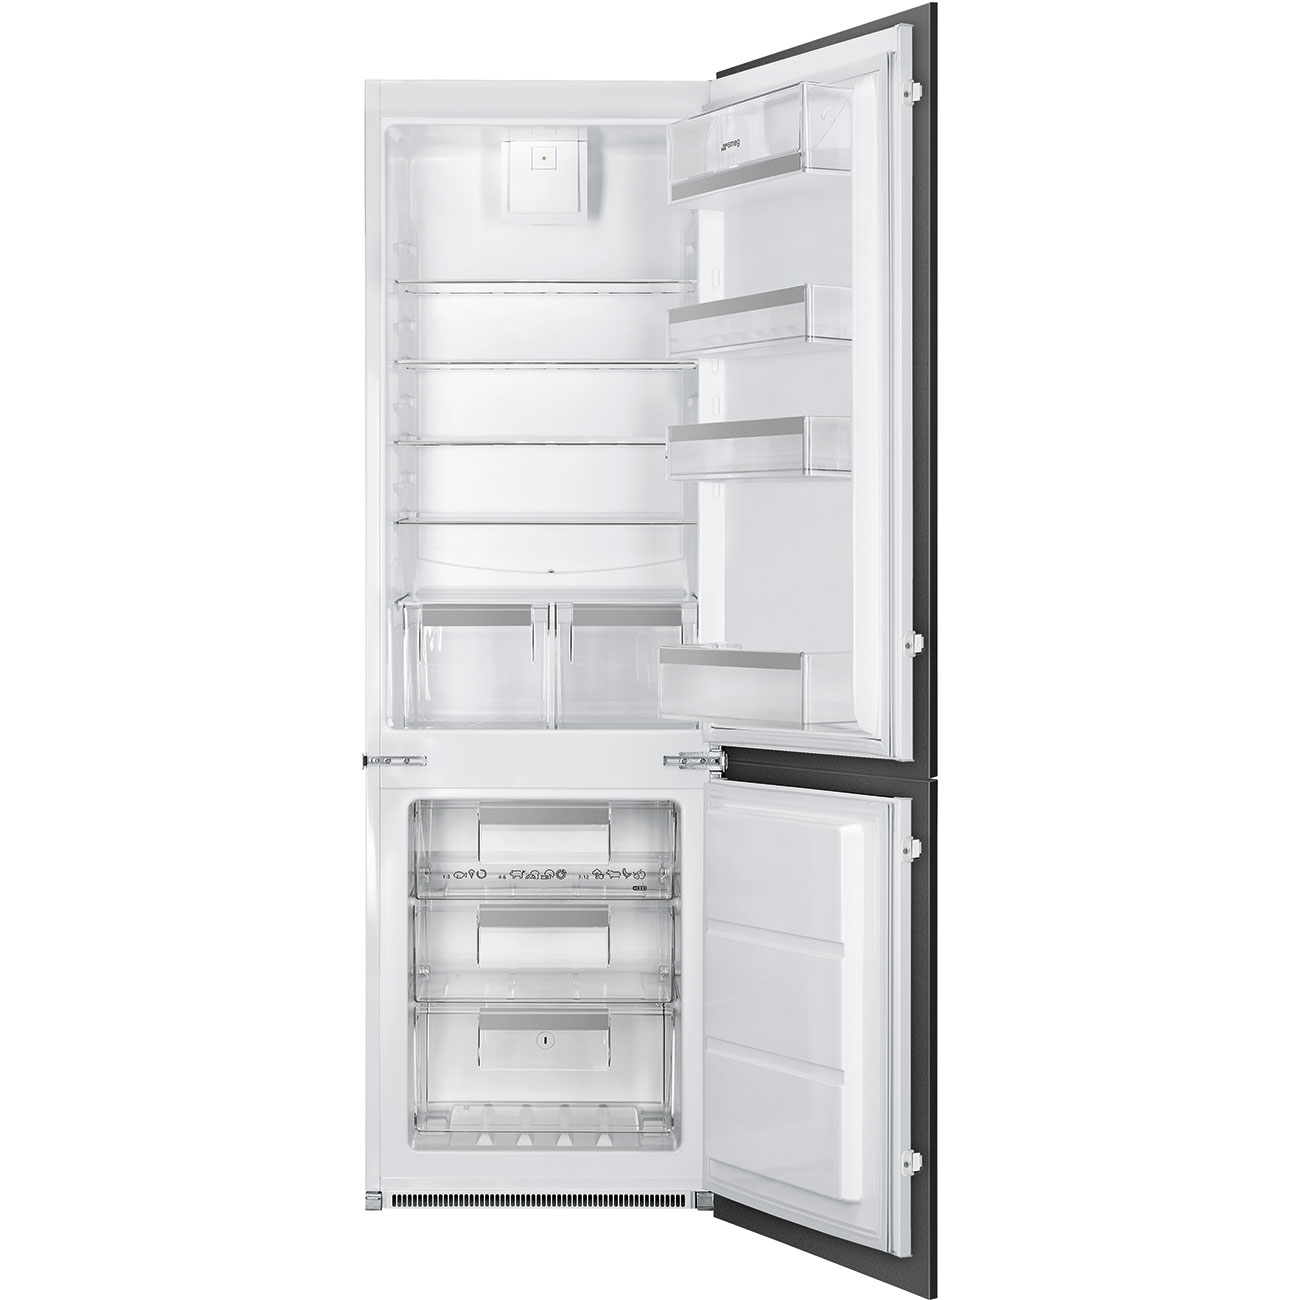 Встраиваемый холодильник Smeg C8173N1F белый встраиваемый холодильник smeg c8173n1f белый